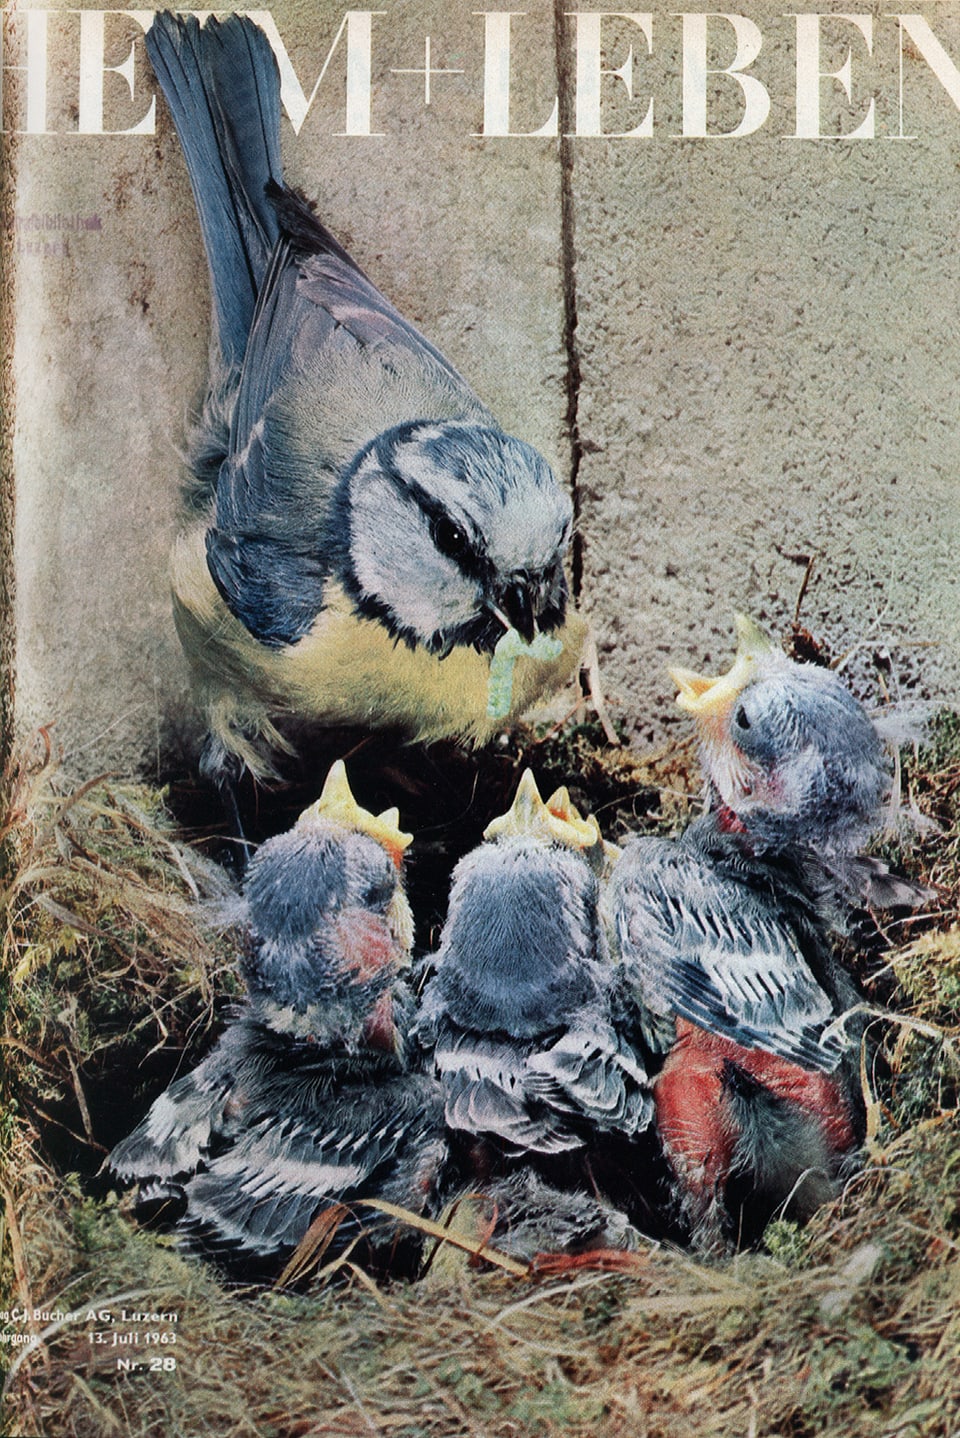 Cover von «Heim und Leben», 13. Juli 1963: Ein Vogel füttert seine Jungen im Nest.